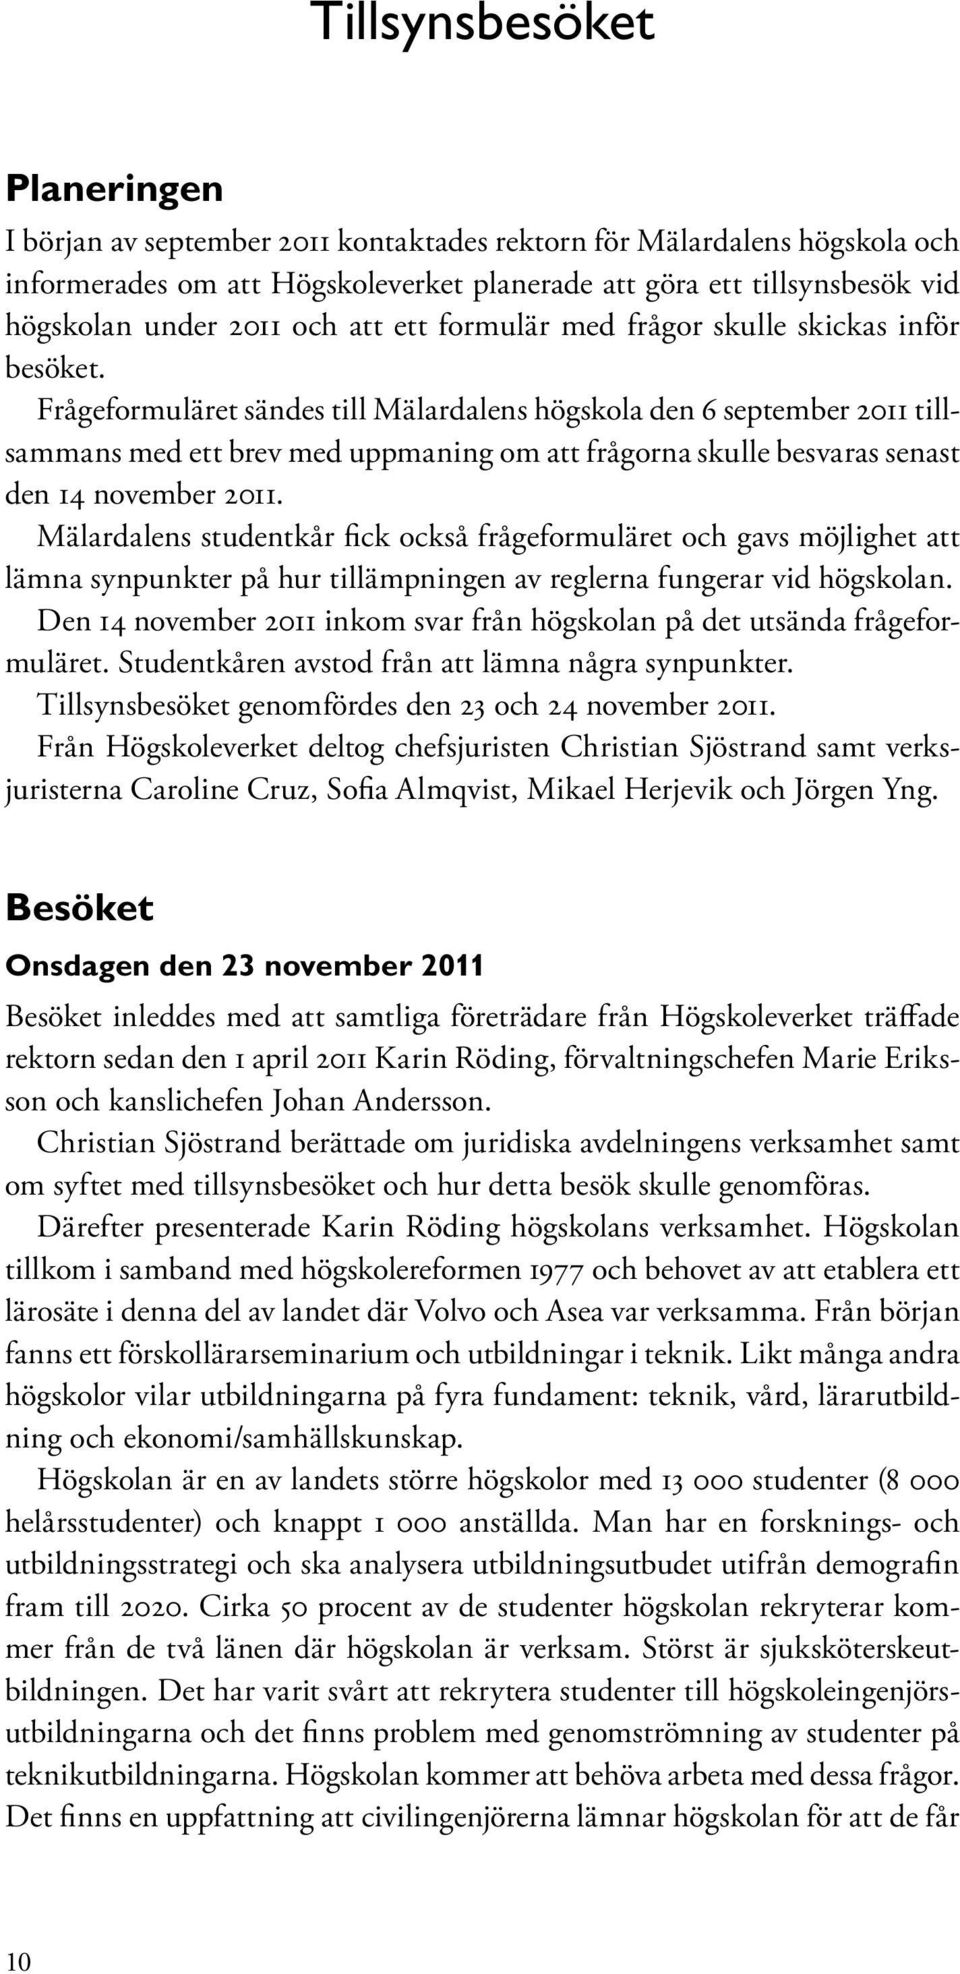 Frågeformuläret sändes till Mälardalens högskola den 6 september 2011 tillsammans med ett brev med uppmaning om att frågorna skulle besvaras senast den 14 november 2011.